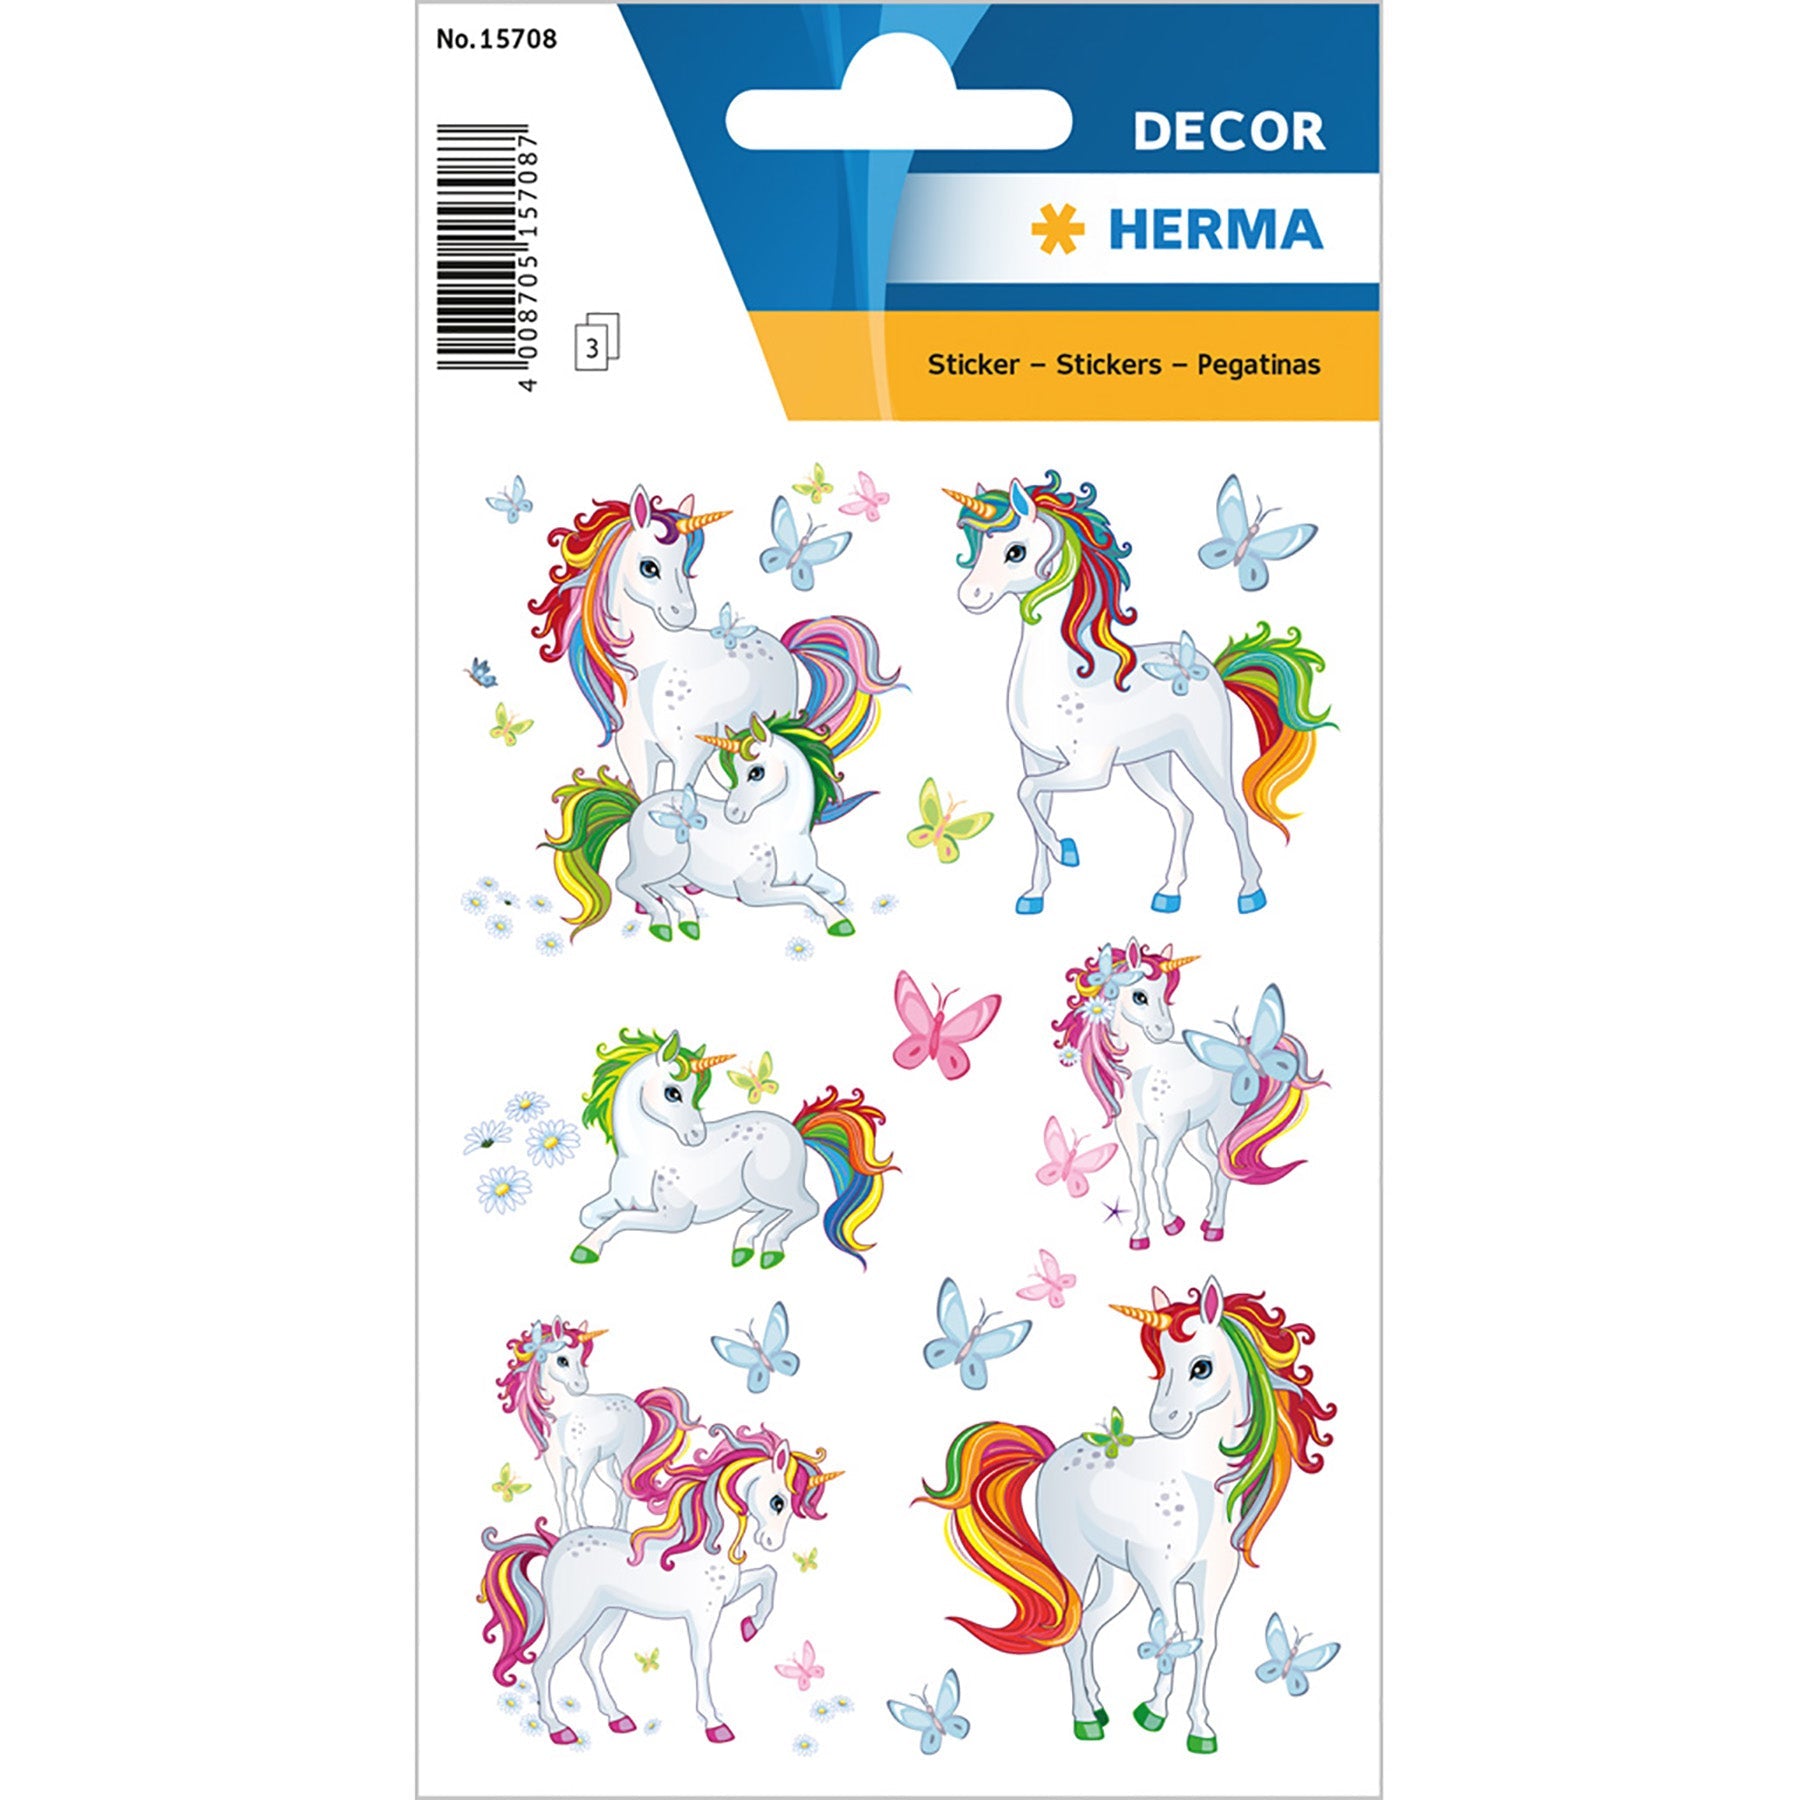 Herma Décor 3 Sheets Stickers Unicorn Best Friends 4.75x3.1in Sheet